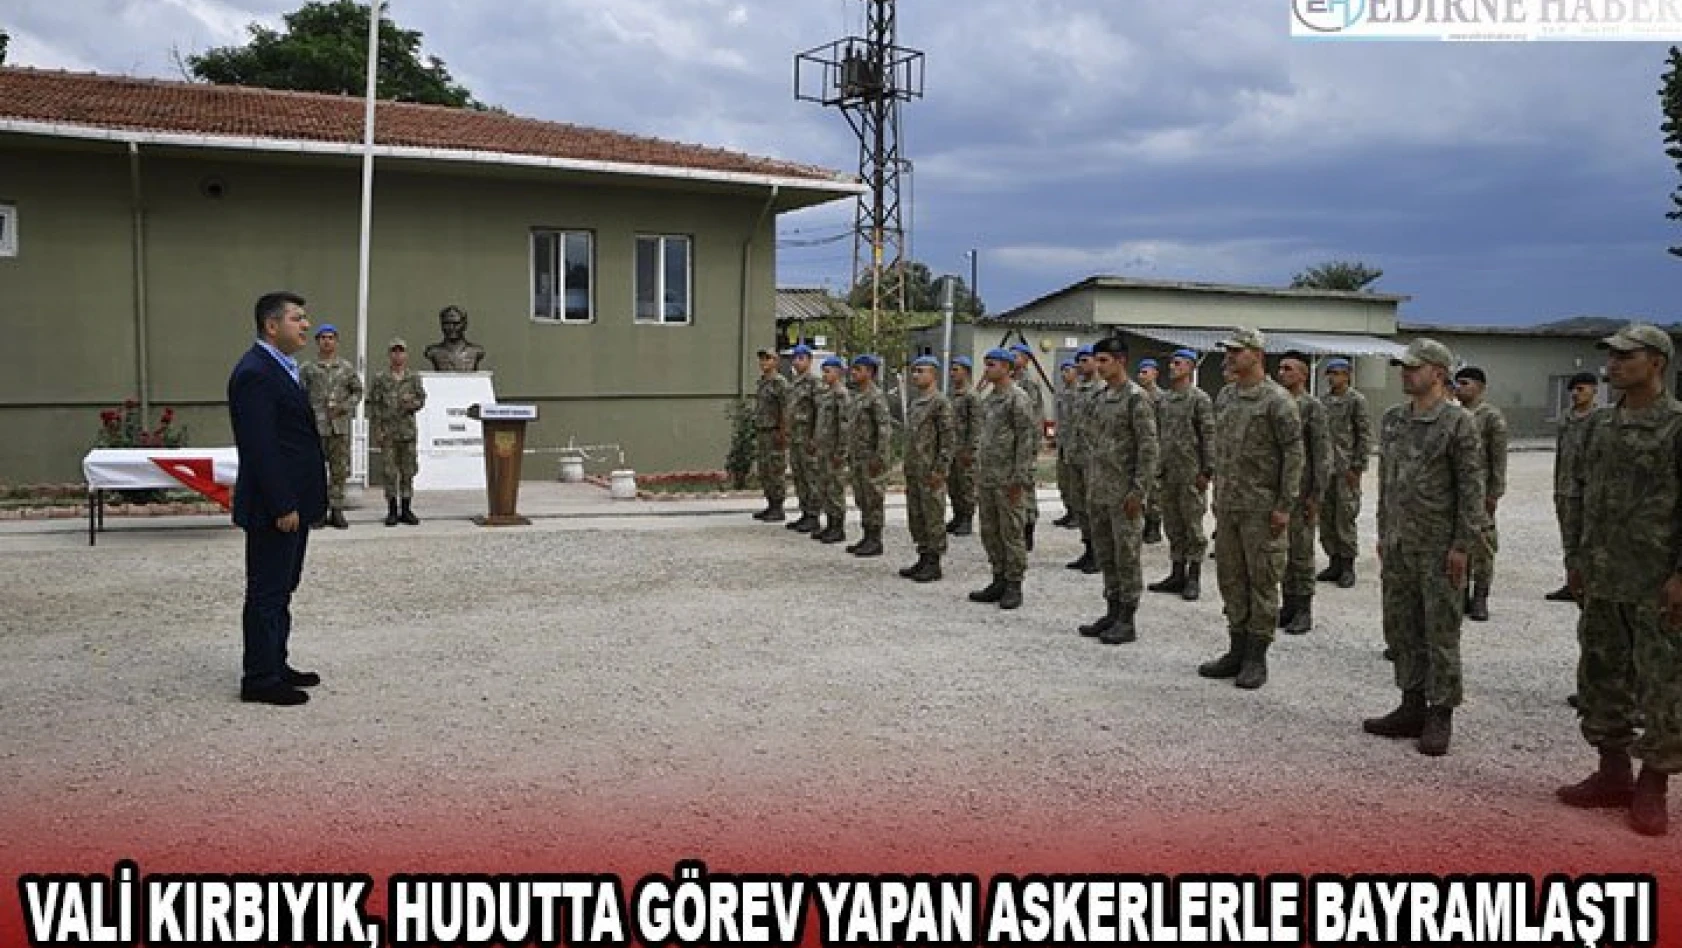 Vali Kırbıyık, hudutta görev yapan askerlerle bayramlaştı